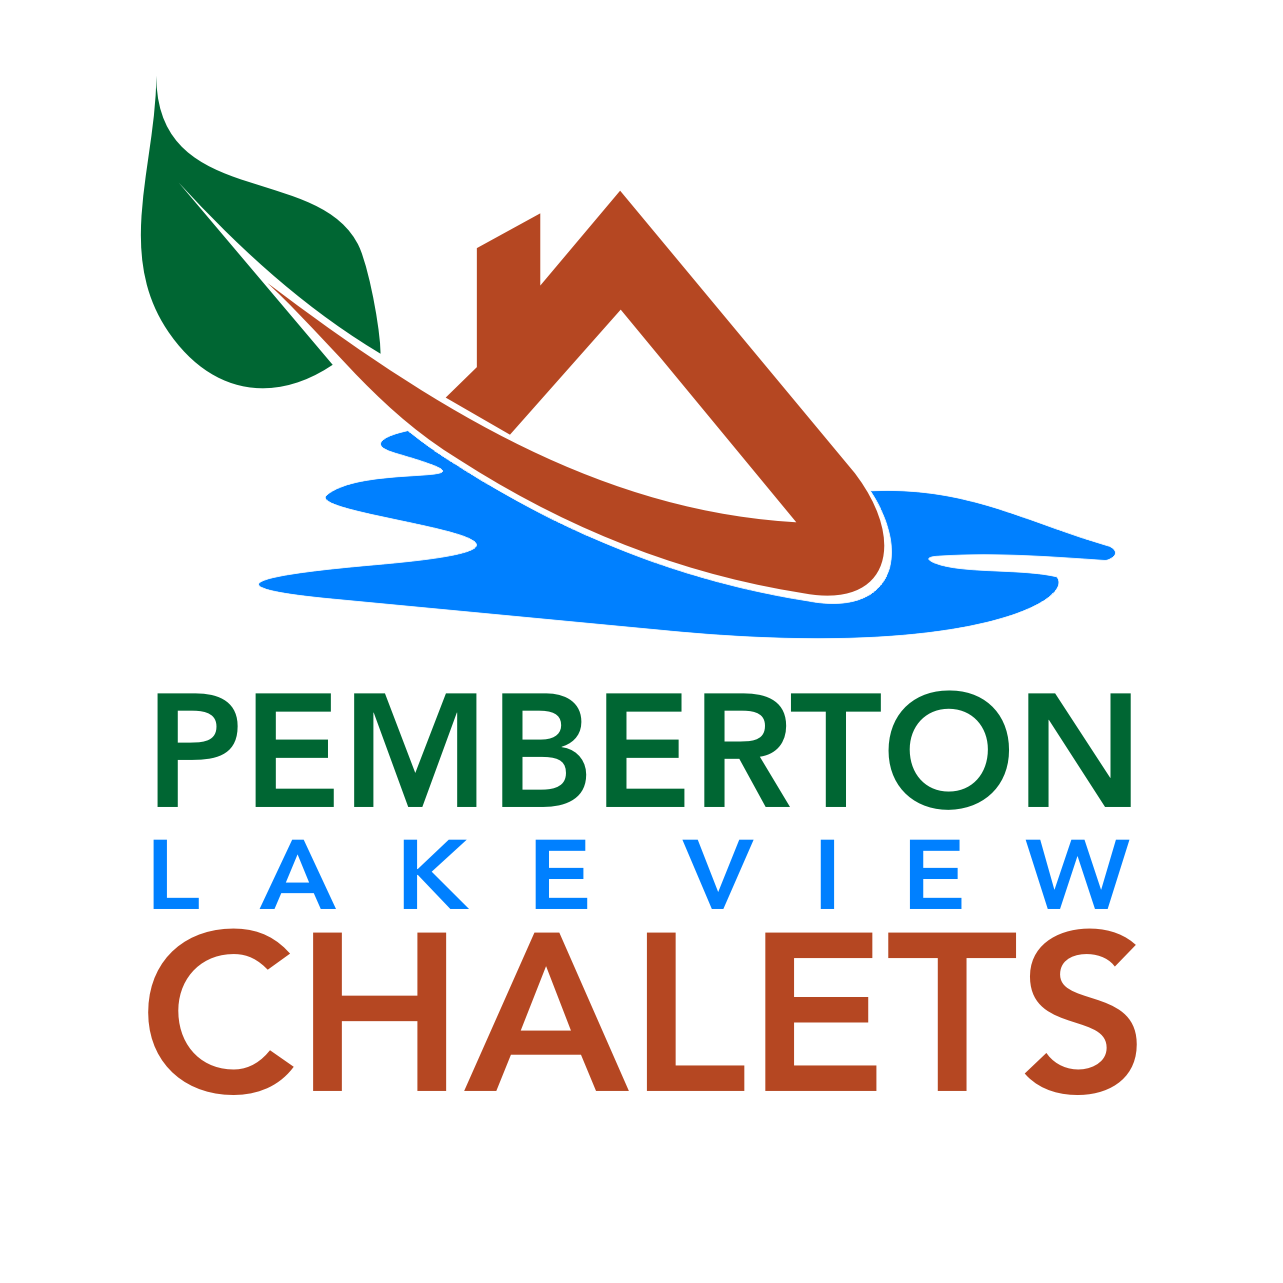 Pemberton Lake View Chalets Square Logo Transparent BG